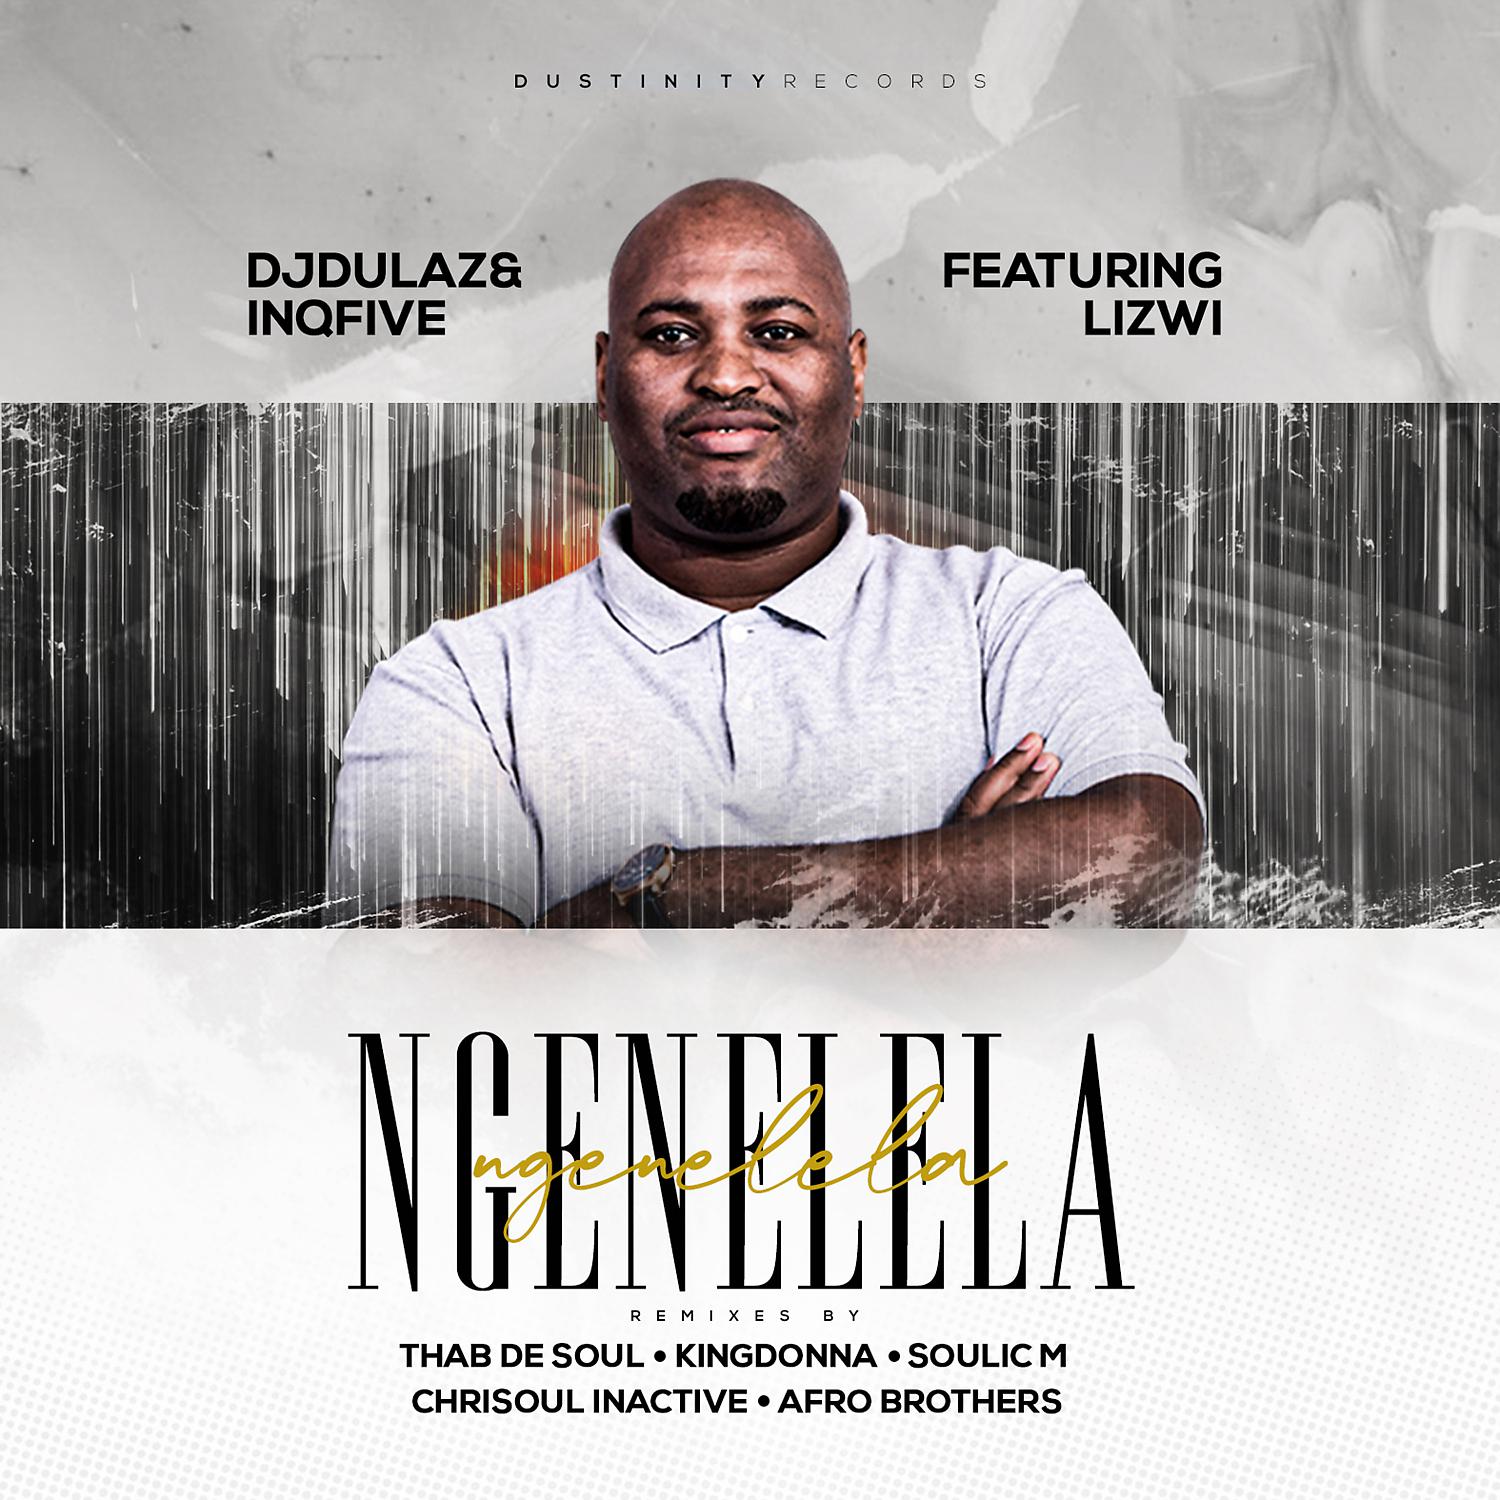 DJ Dulaz & InQfive & Lizwi - Ngenelela (feat. Lizwi) (Emotional Mix)